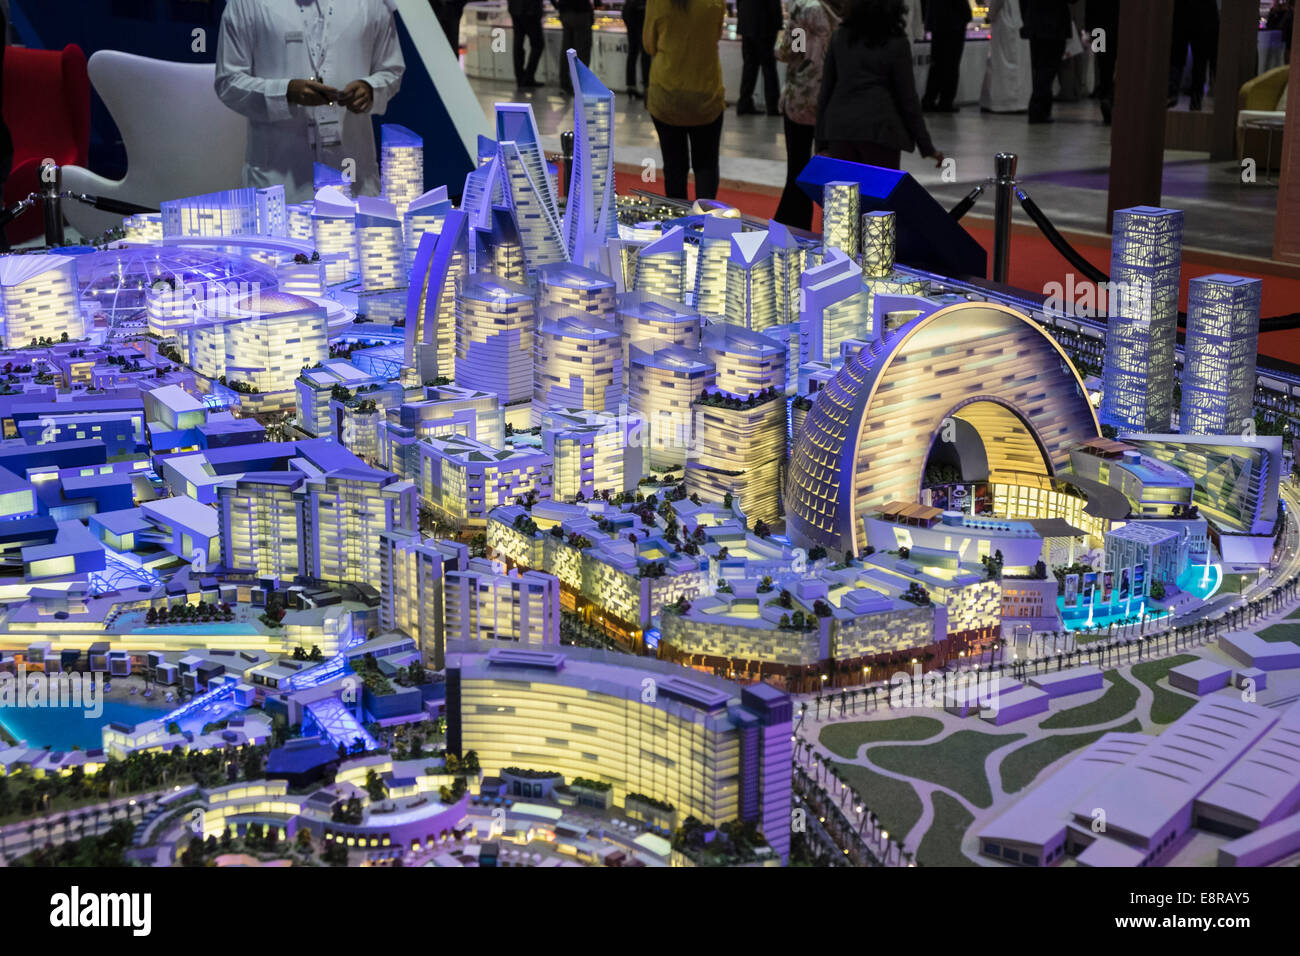 Modelo de nuevas propuestas de tiendas de lujo y hotel en Mall de desarrollo del mundo por el desarrollador Dubai Holding en propiedad Foto de stock